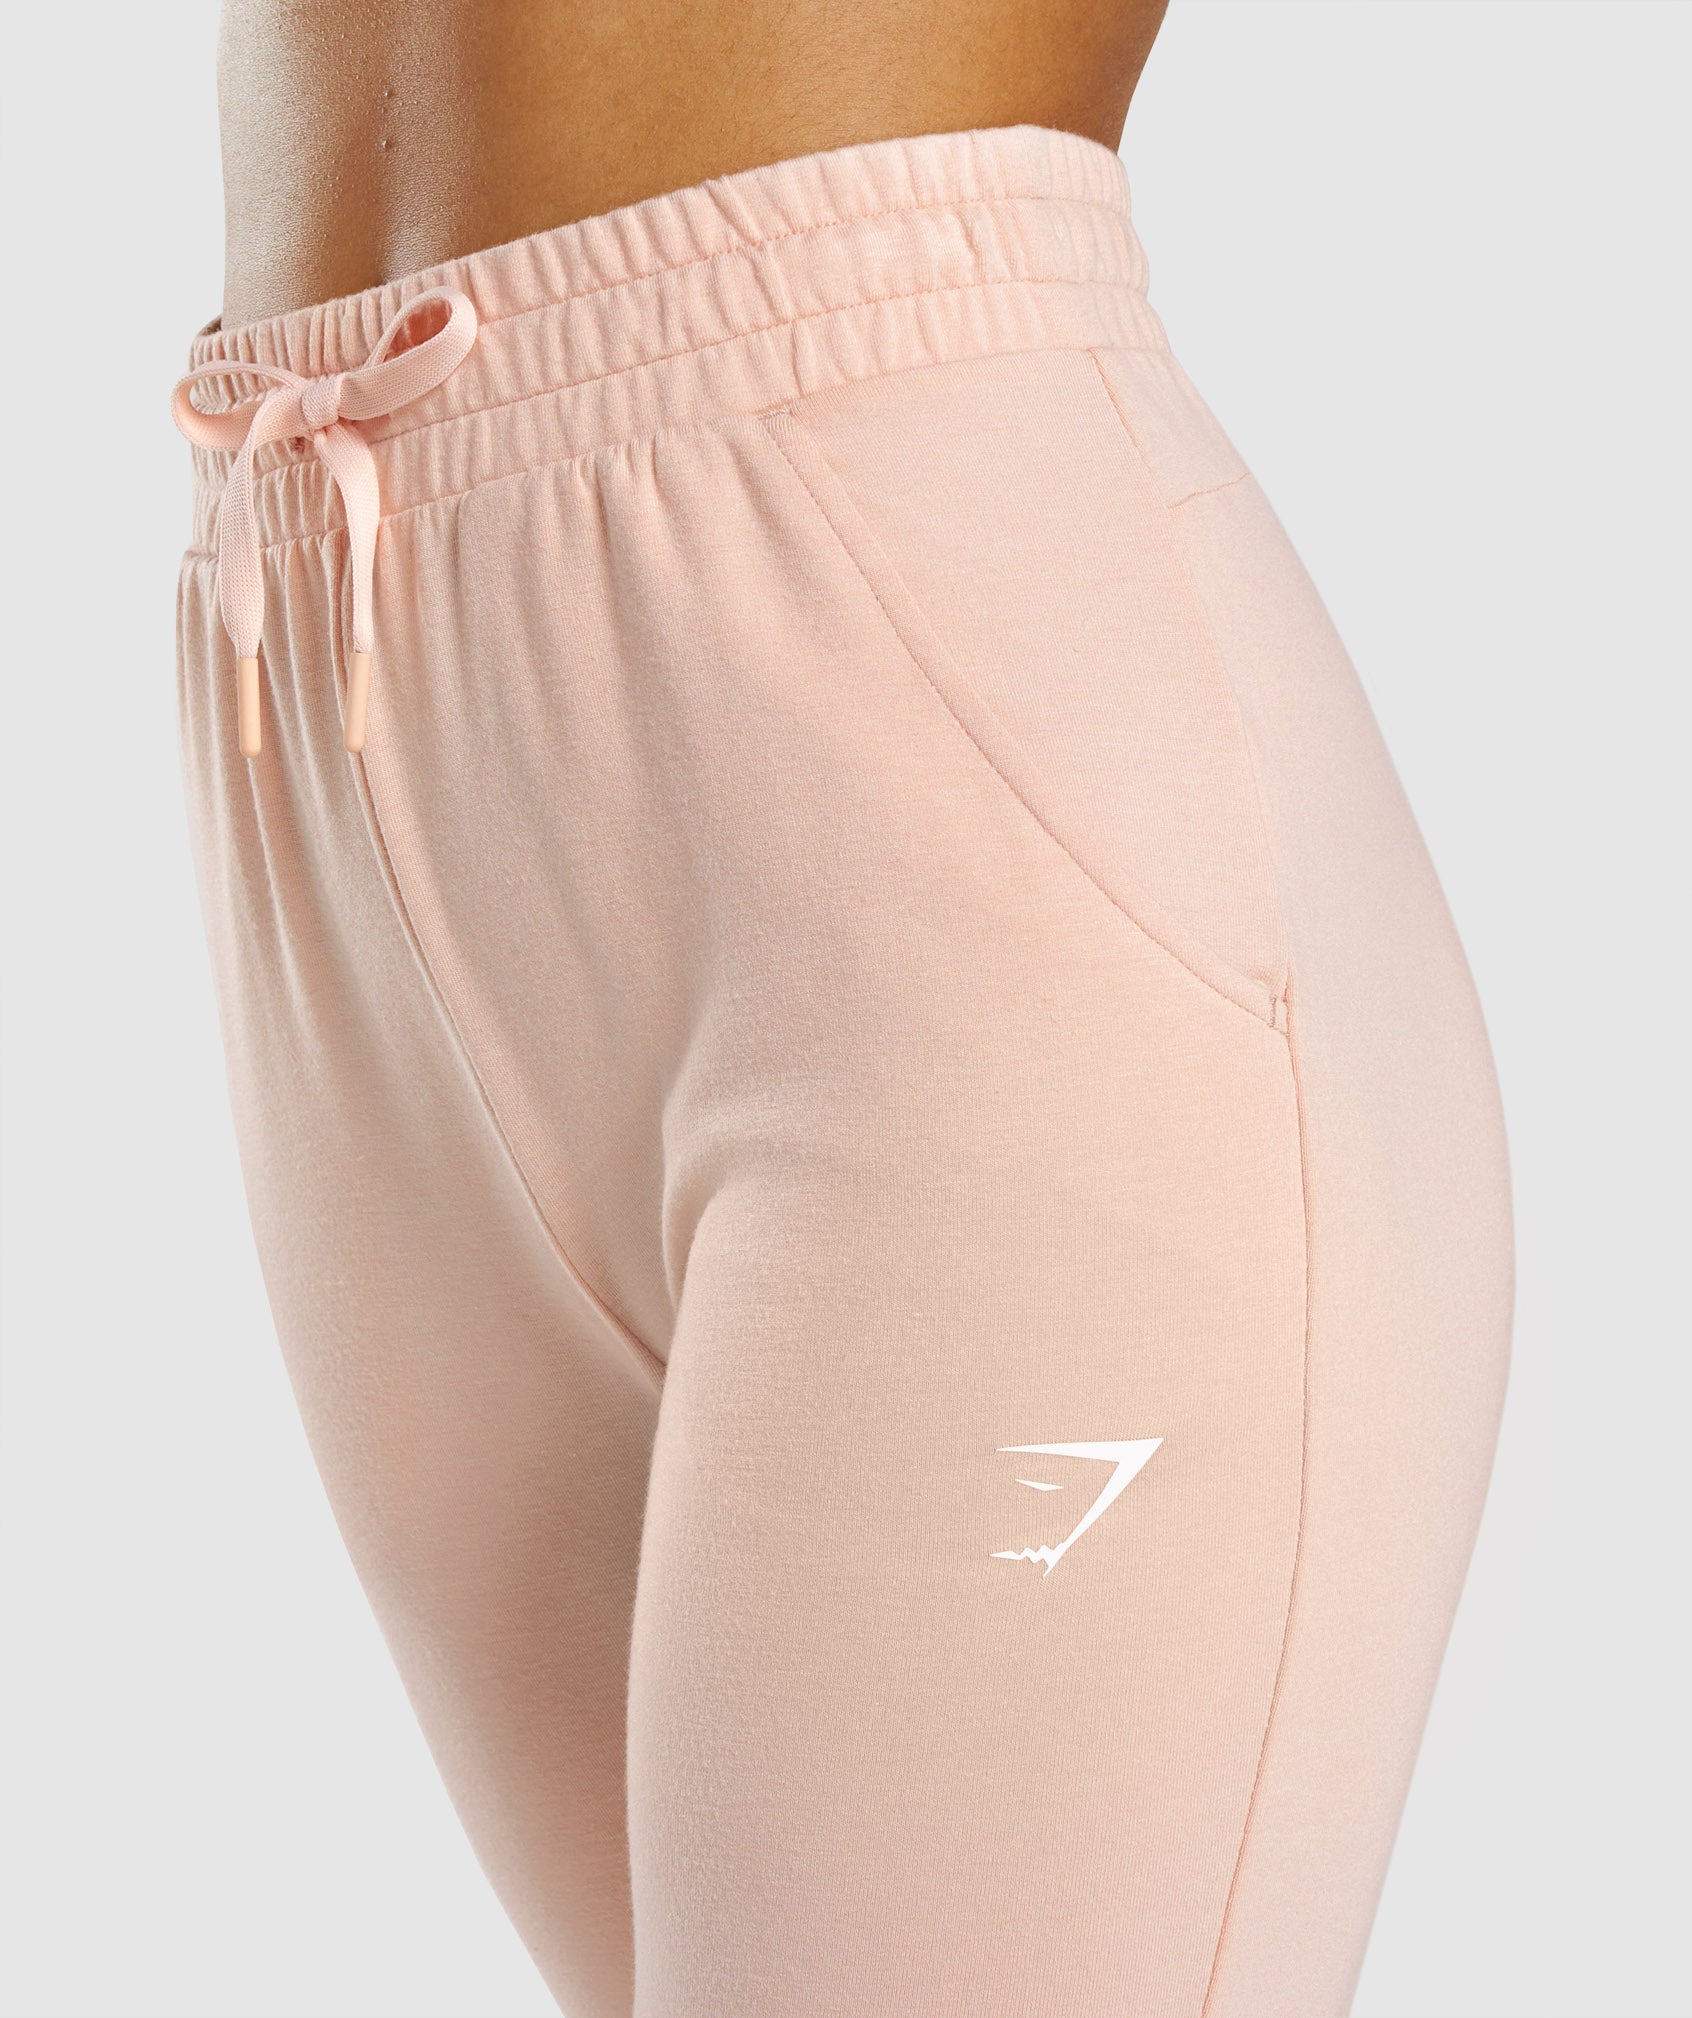 Women's Gymshark Pippa pants jogger leggings S offwhite white